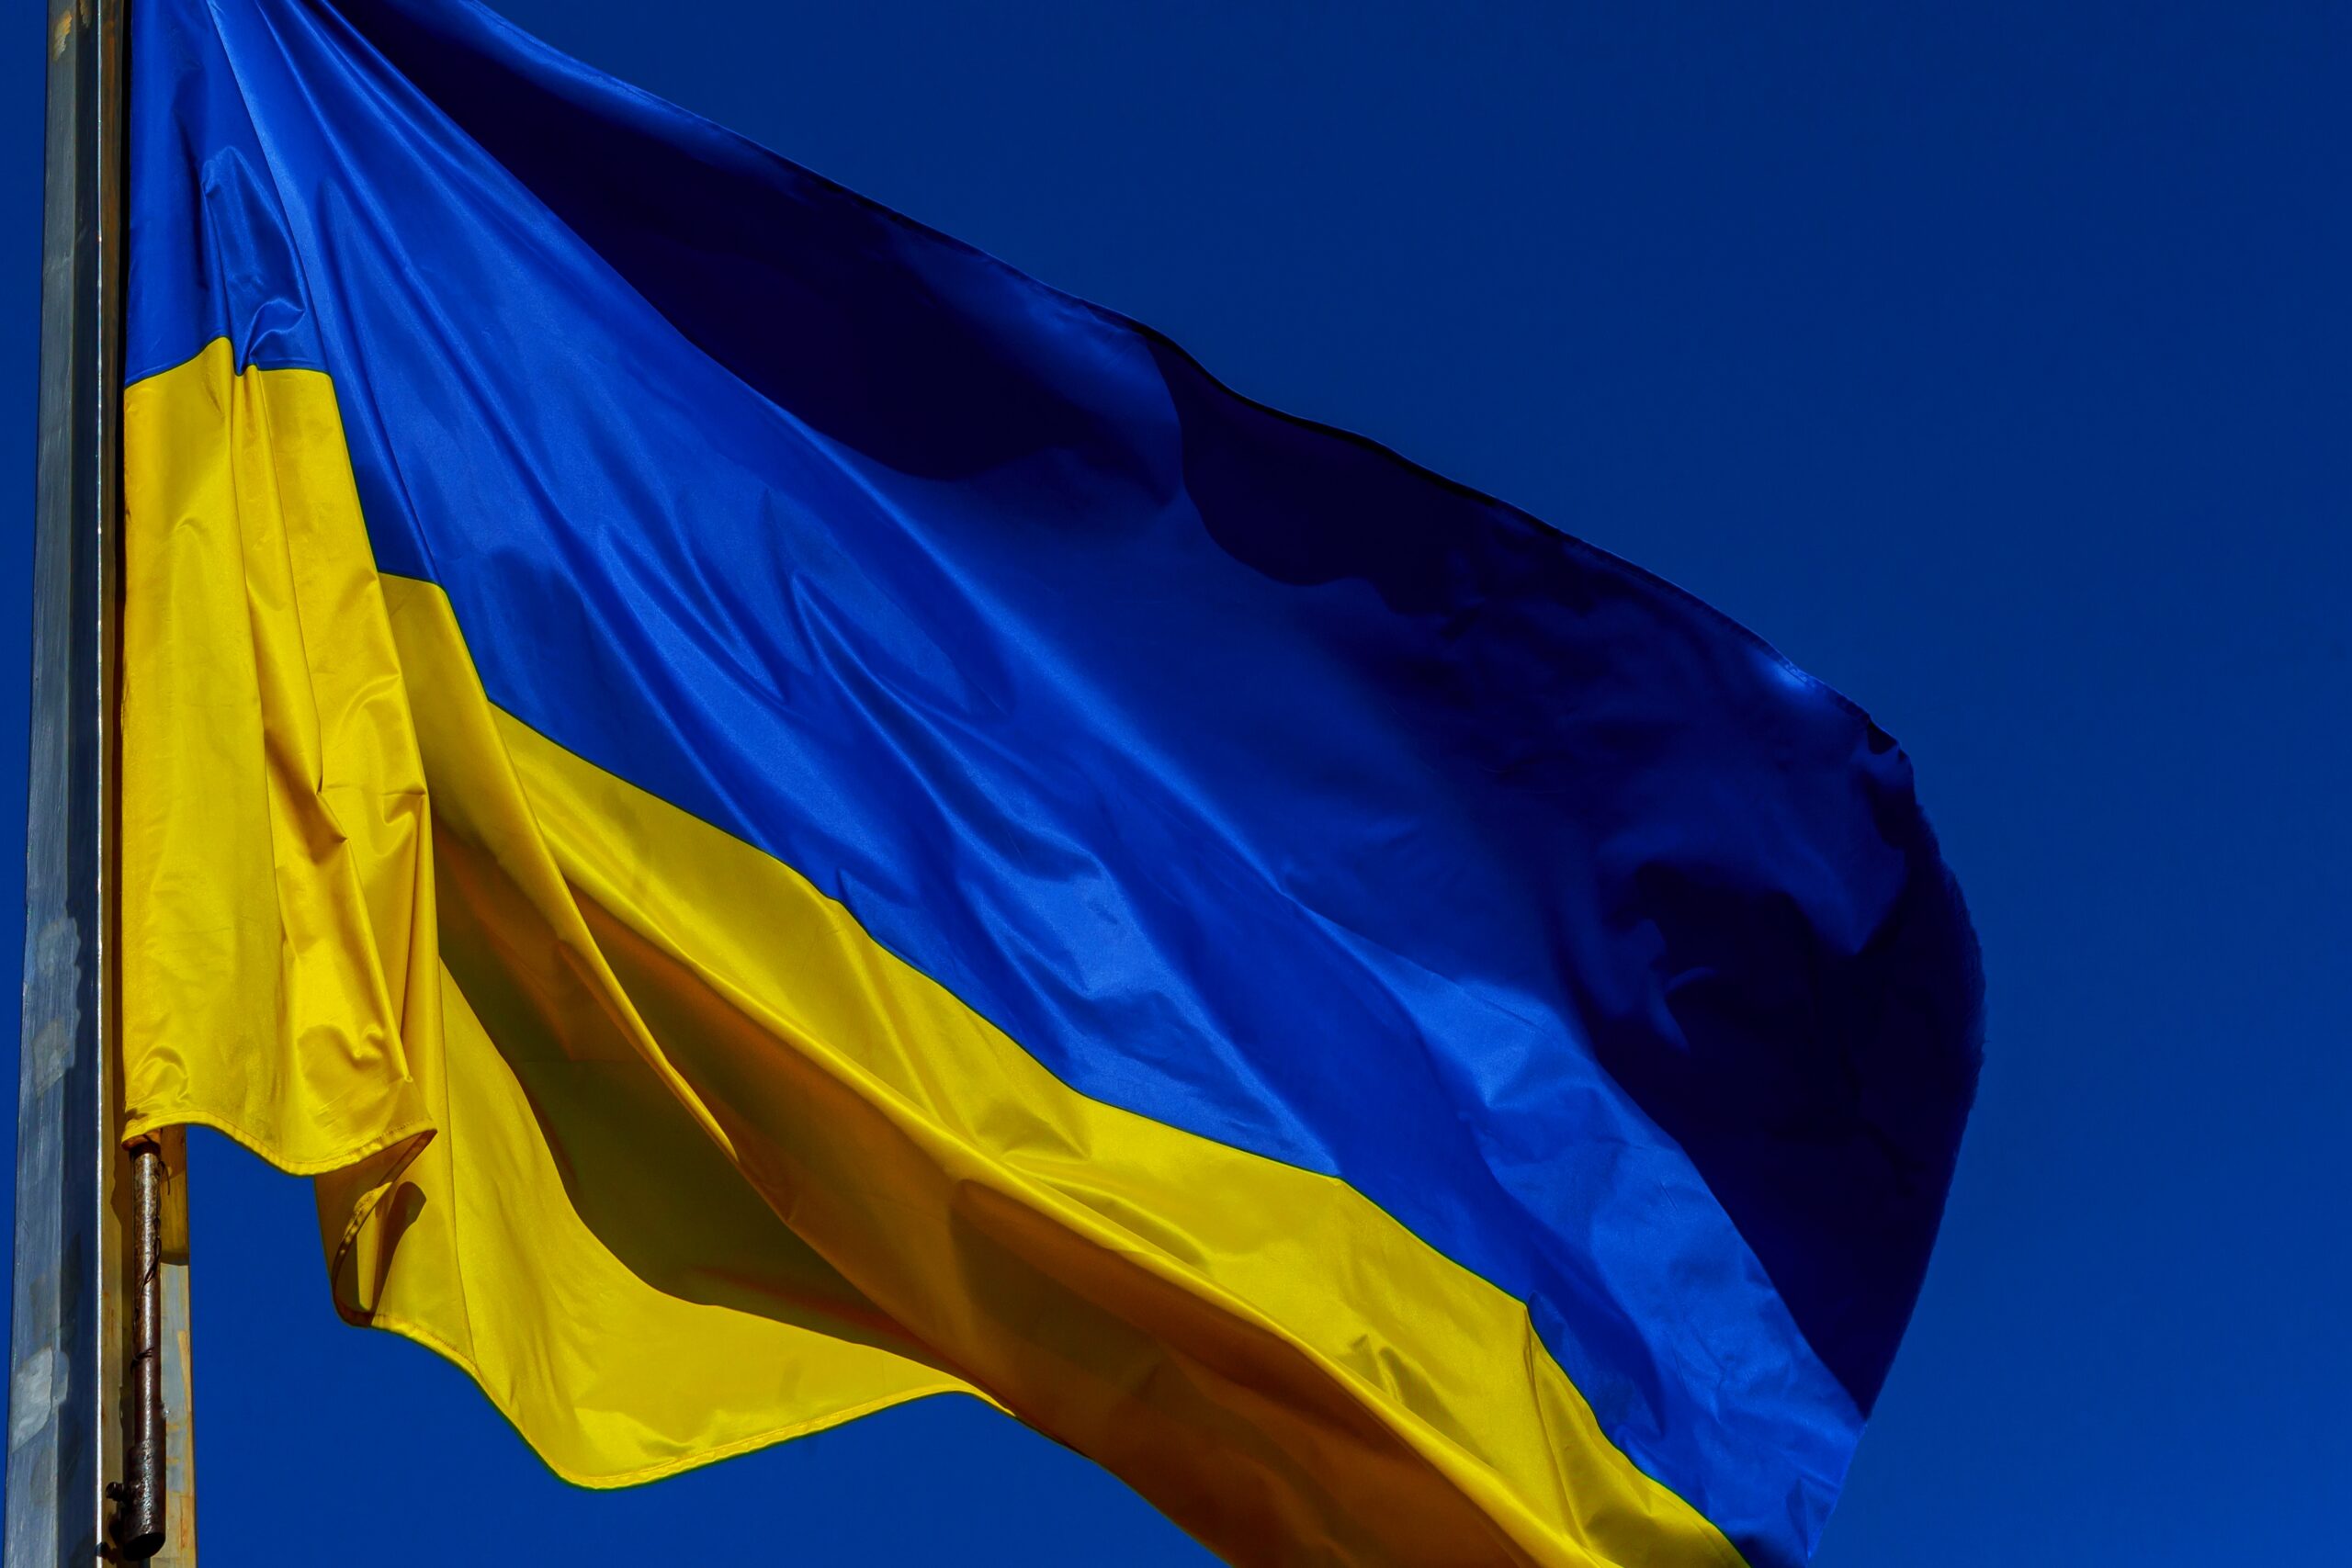 Solidarni z Ukrainą - obraz wyróżniając wpis blogowy